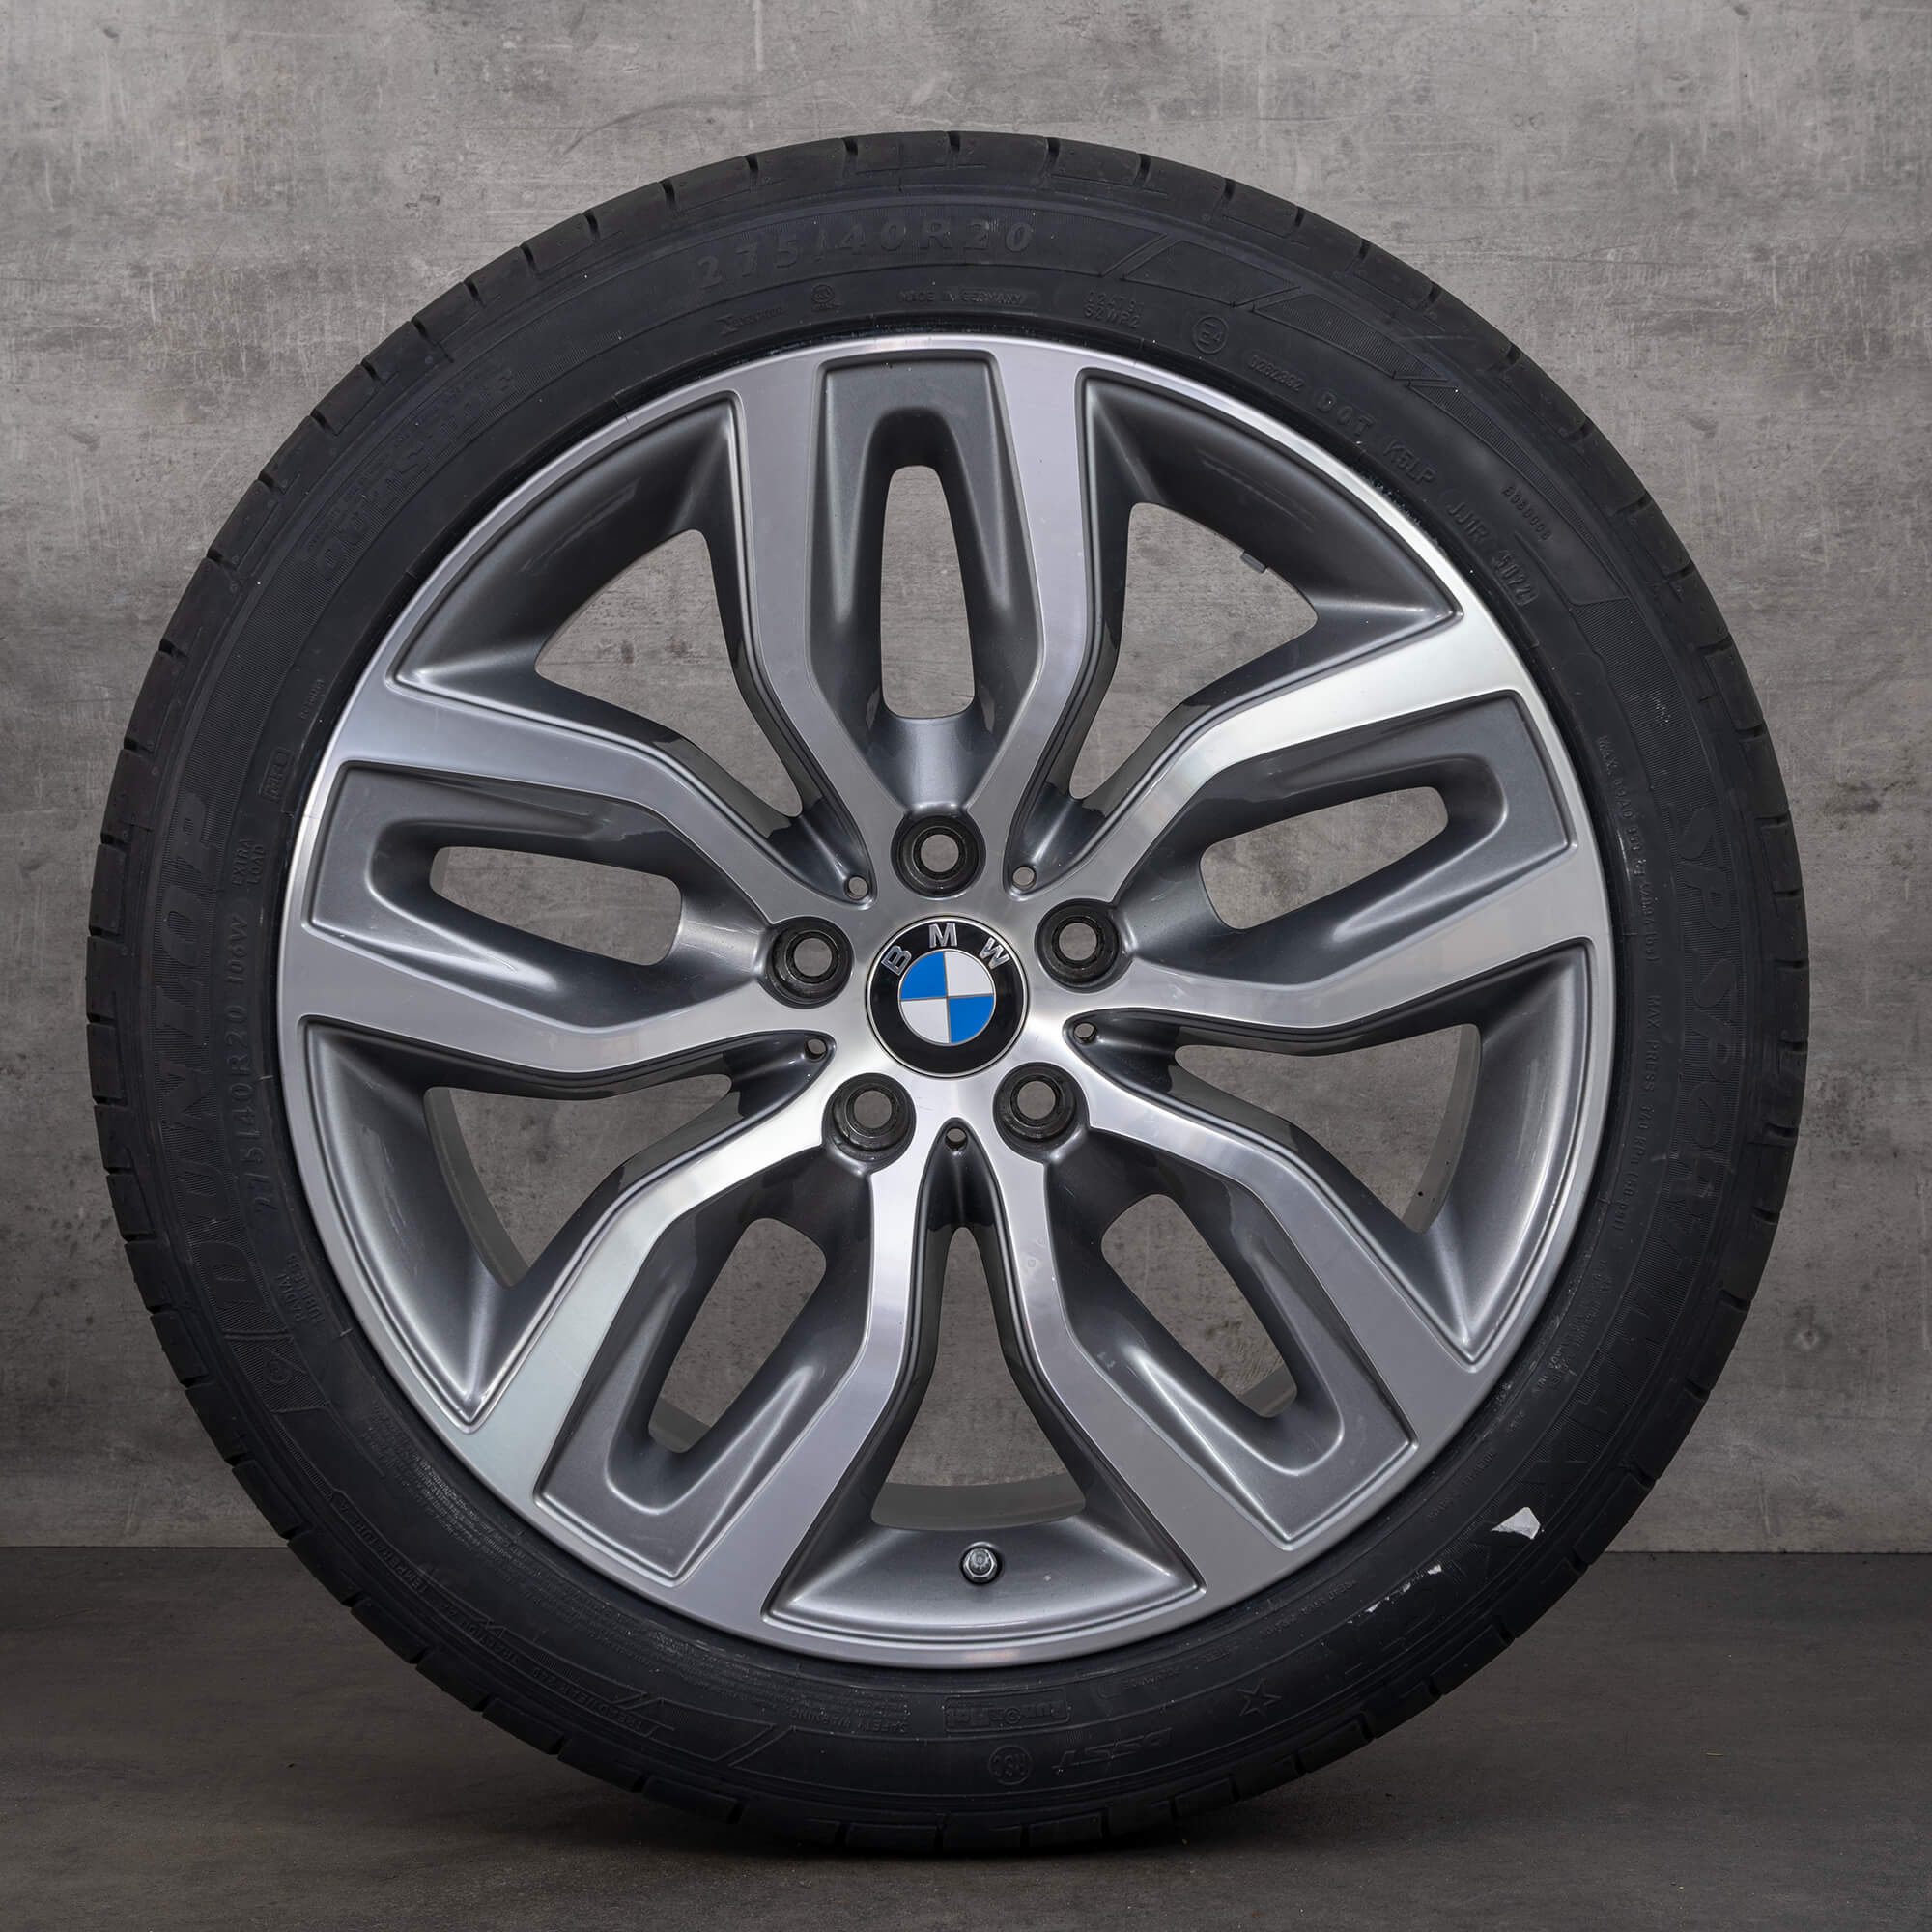 BMW X5 E70 F15 X6 F16 rims summer tires wheels 20 inch 6788027 6788028